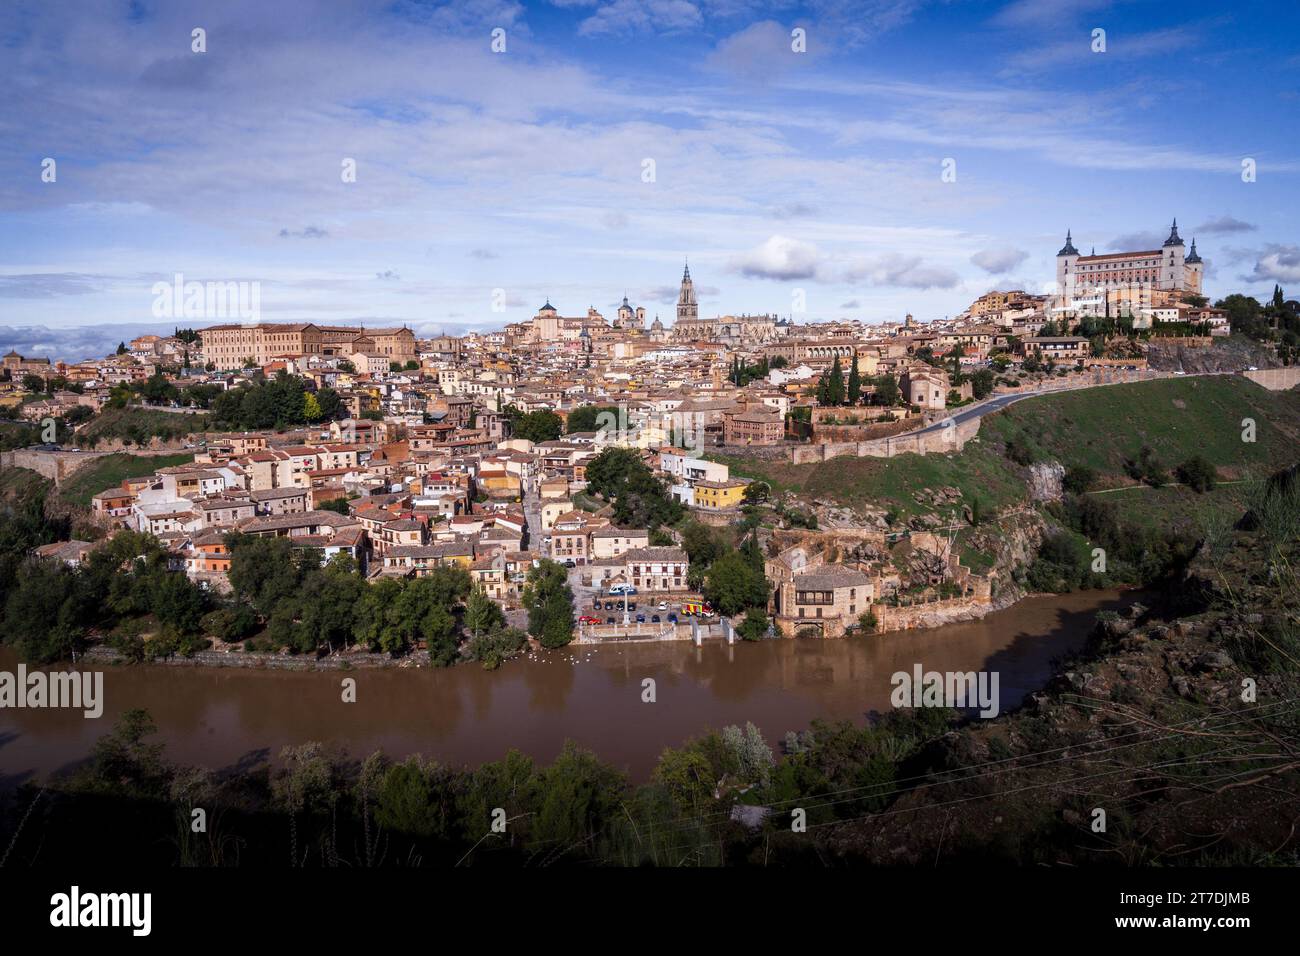 La città spagnola di Toledo costruita su una collina circondata dal fiume Targus. Diverse credenze religiose coesistevano nel corso dei secoli. Foto Stock